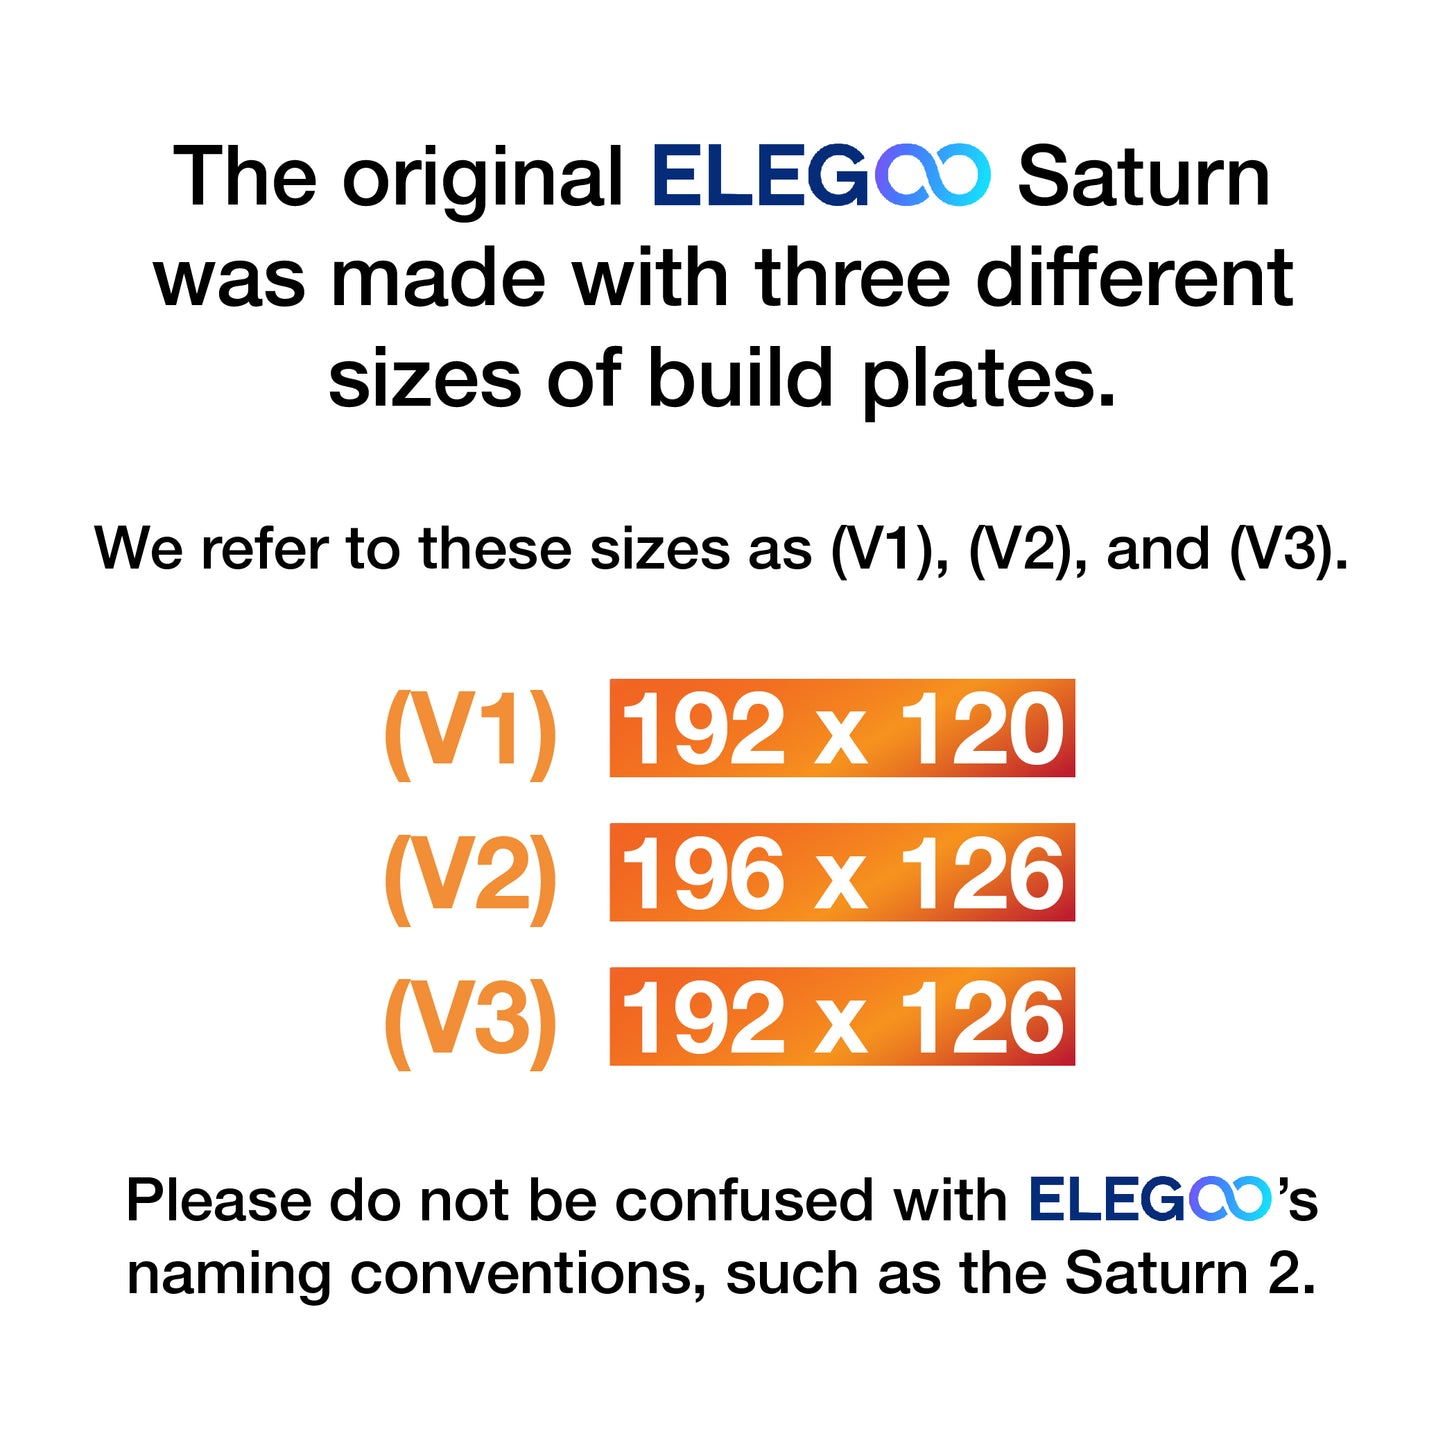 (V3) Elegoo Saturn - 192 x 126